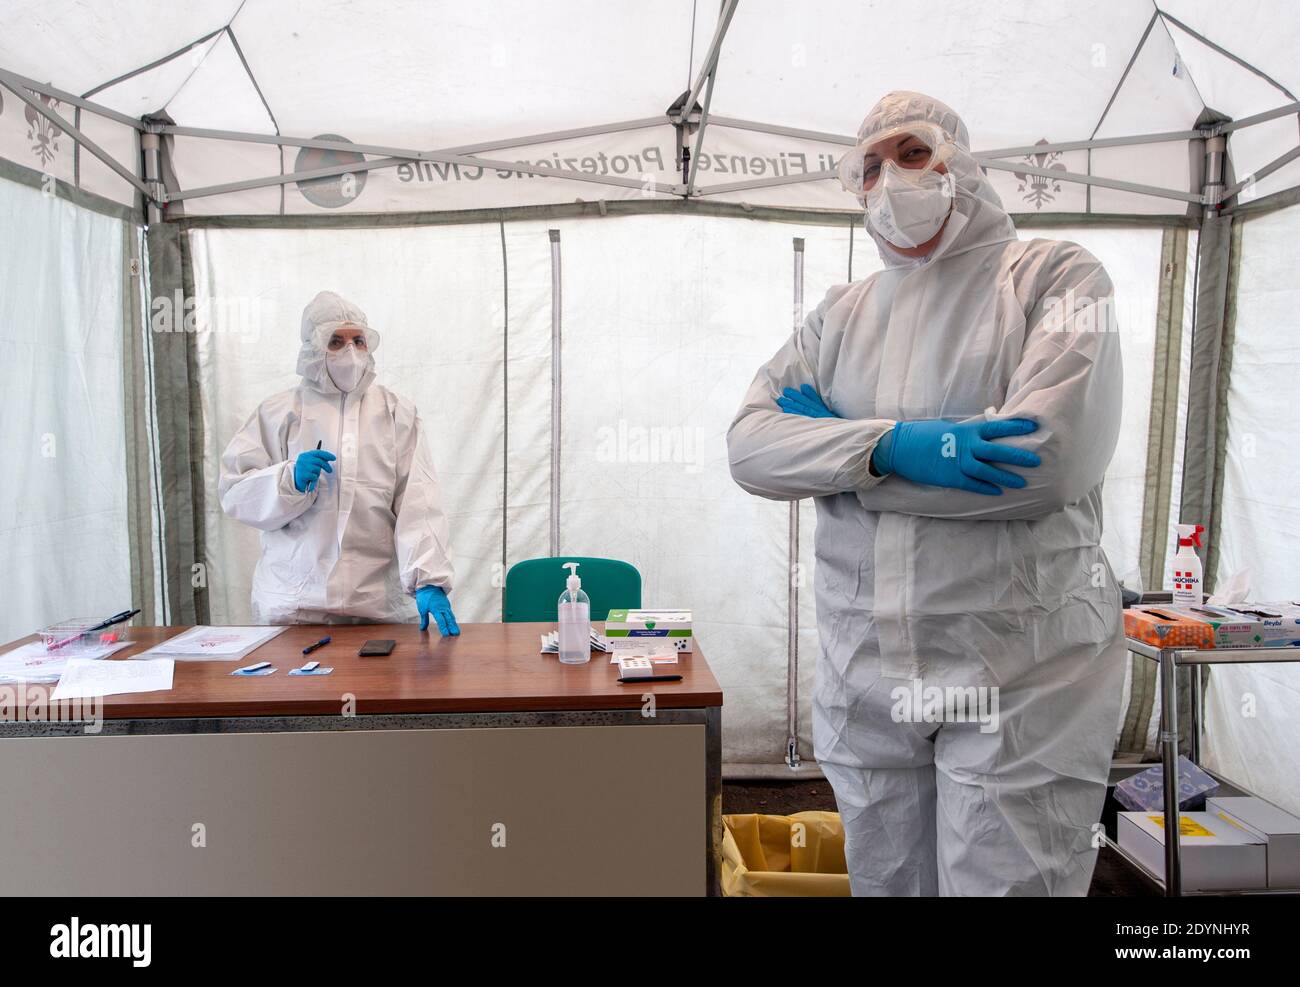 Firenze, Italia - 2020 dicembre 21: Operatori sanitari non identificati in un posto sanitario, allestiti in una tenda, durante la pandemia di Covid-19. Suite sterili. Foto Stock